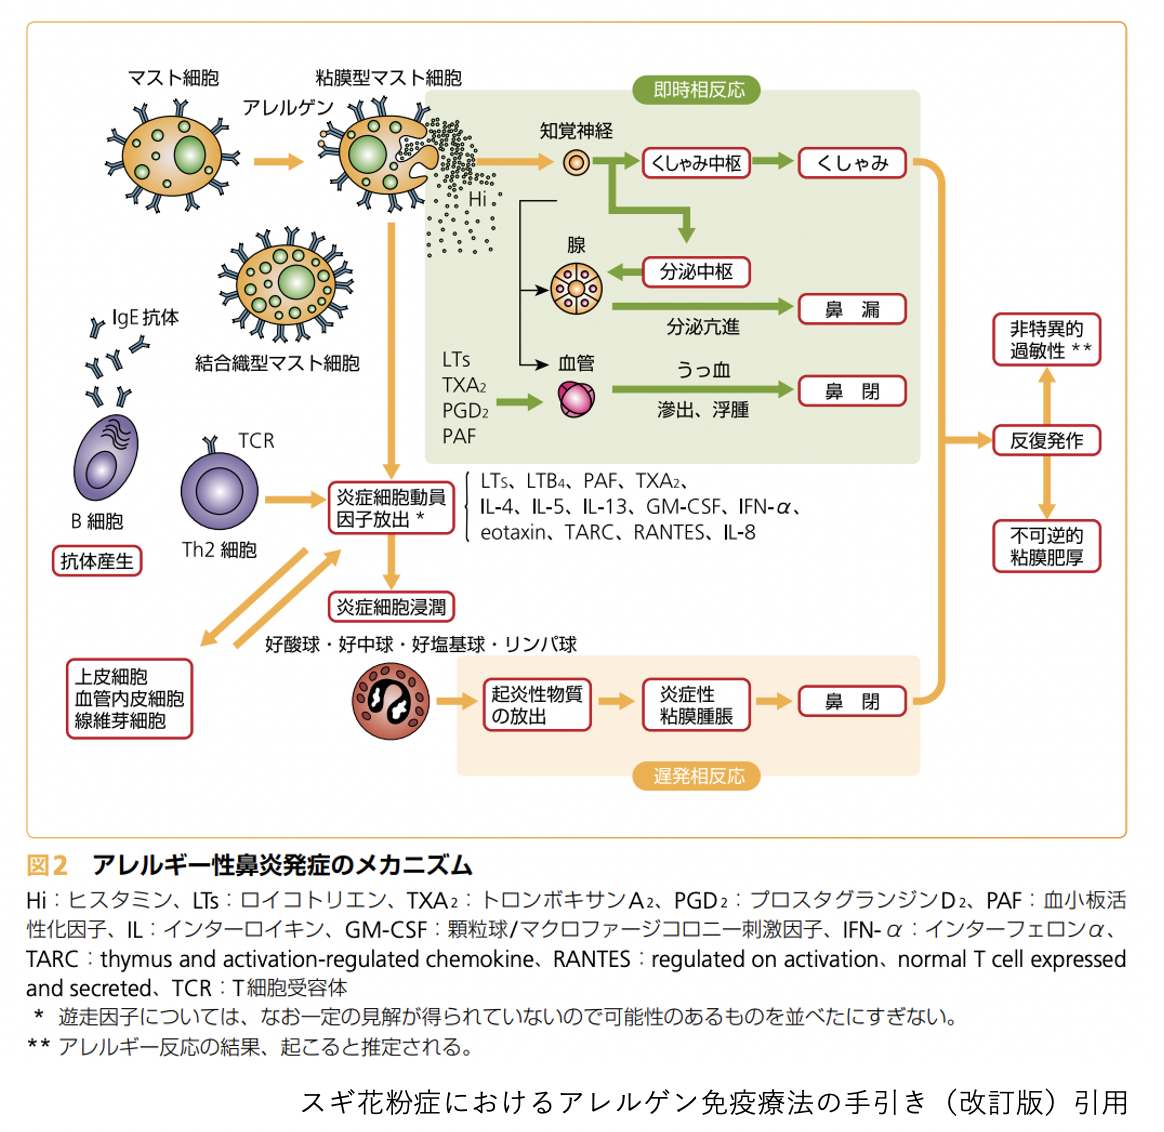 スギ花粉におけるアレルゲン免疫療法の手引き（改訂版）引用